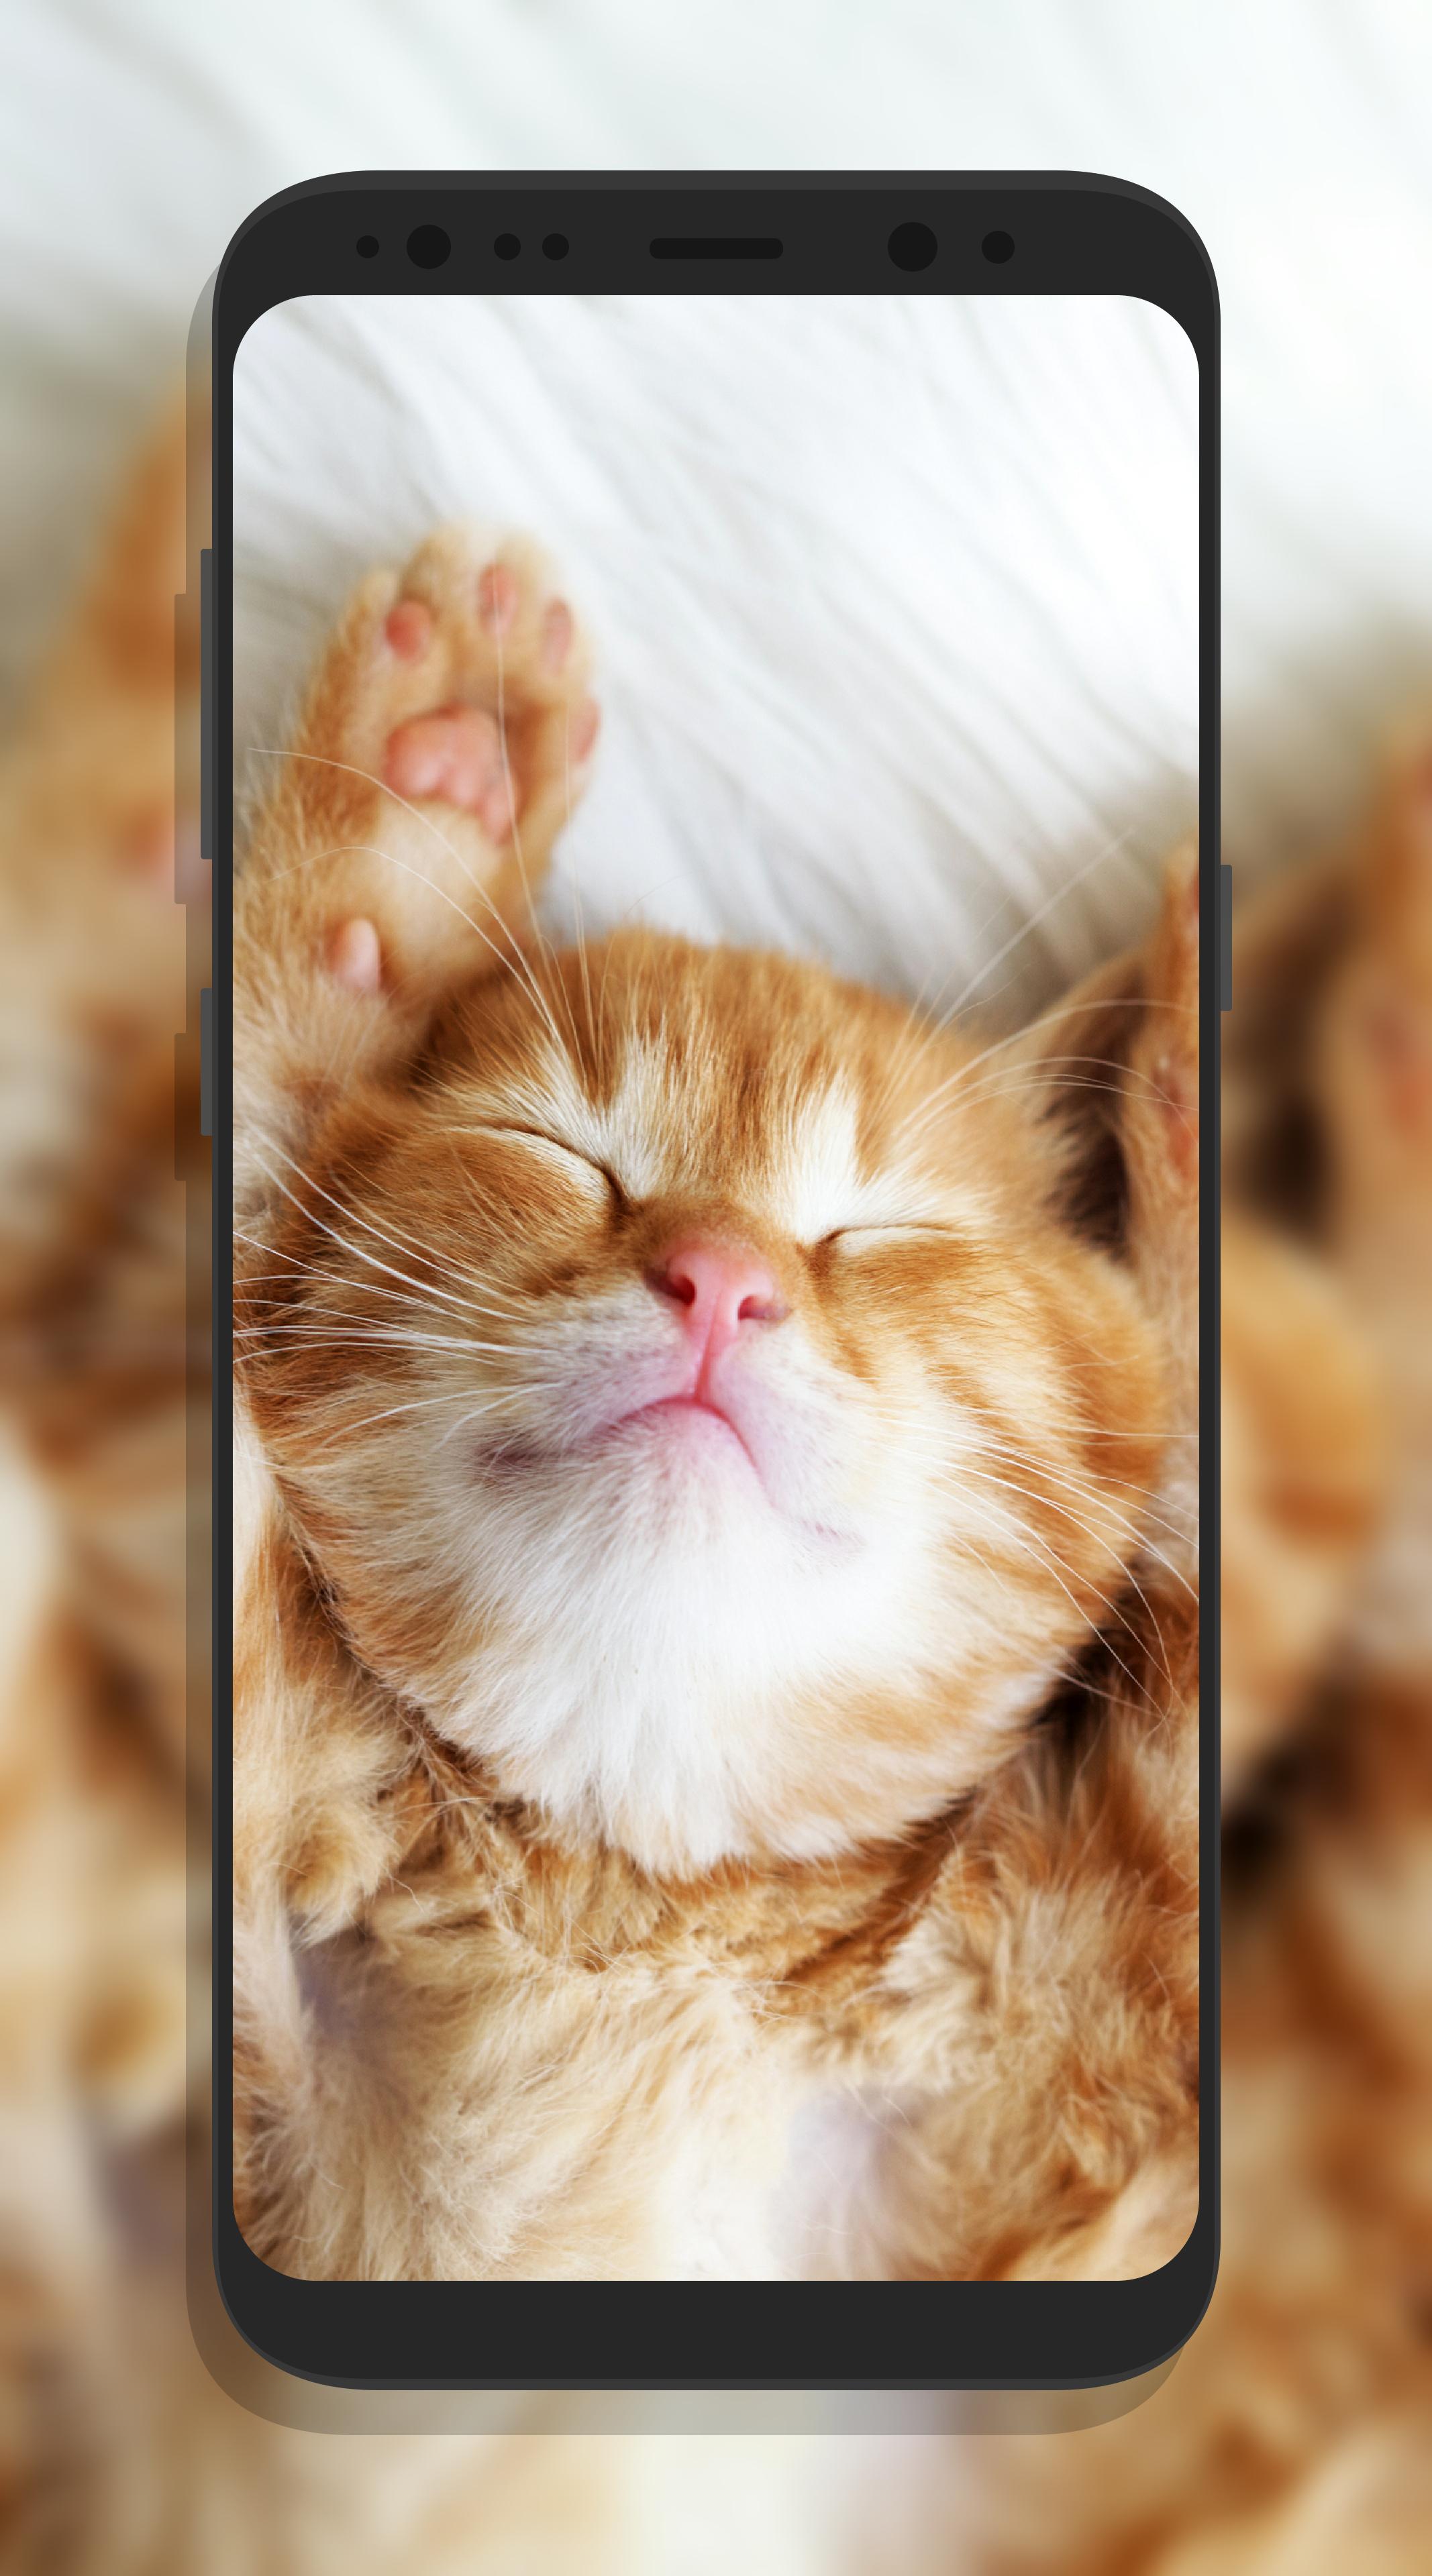 Android 用の かわいい猫壁紙 Apk をダウンロード